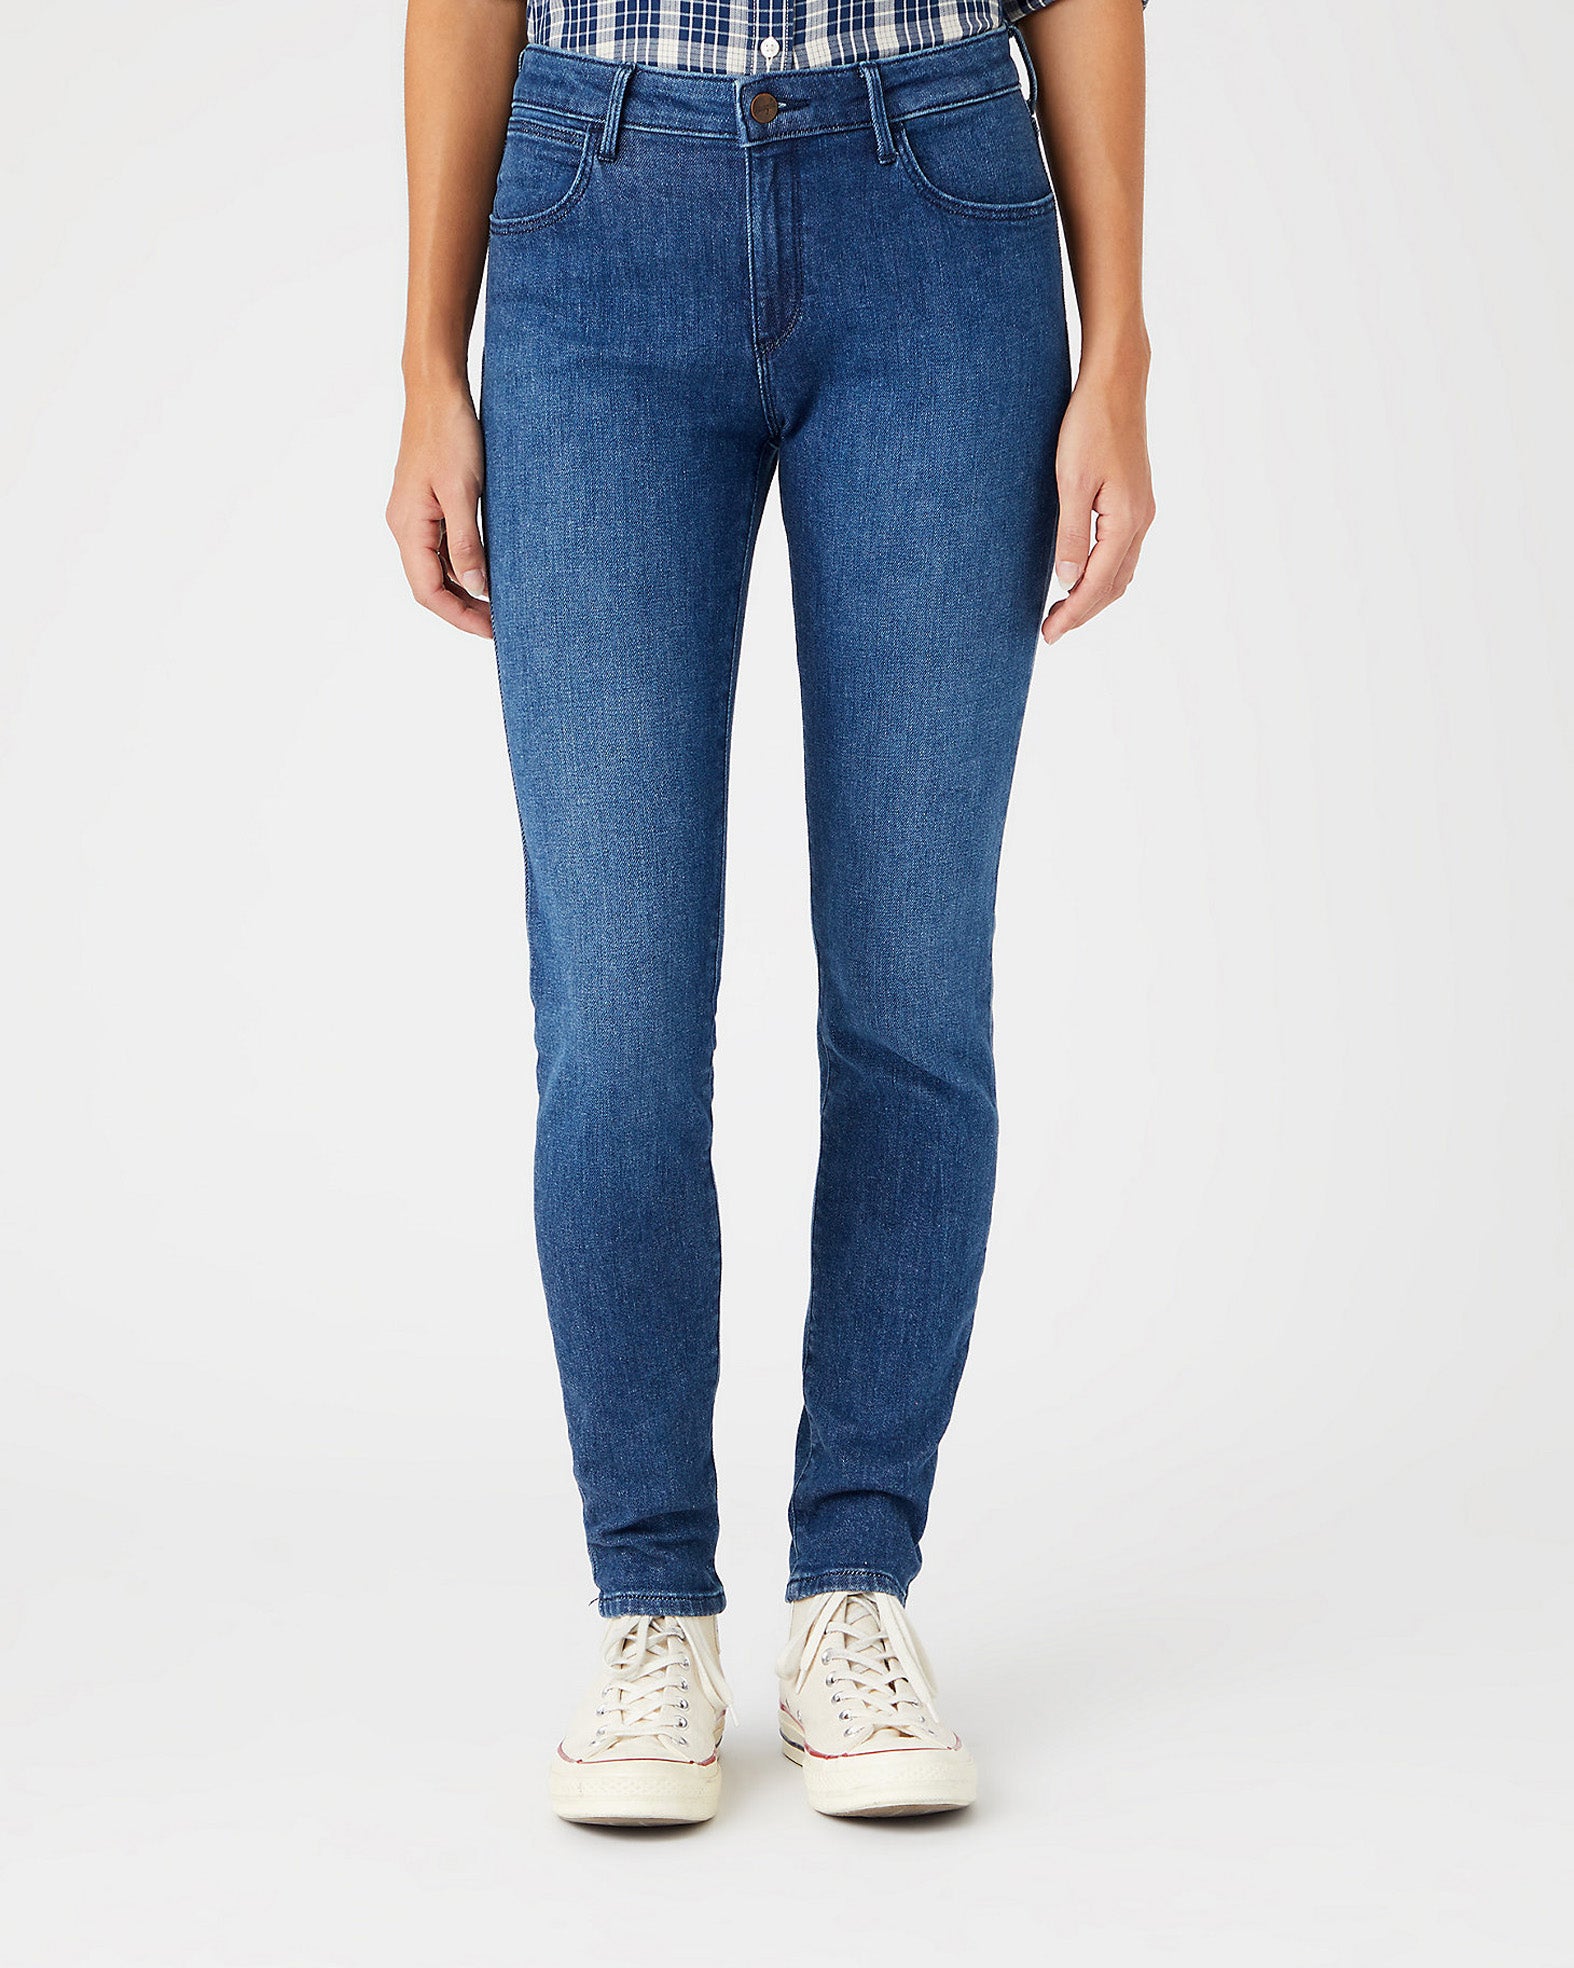 Wrangler Womens Body Bespoke Skinny Jeans - Good Life – JEANSTORE